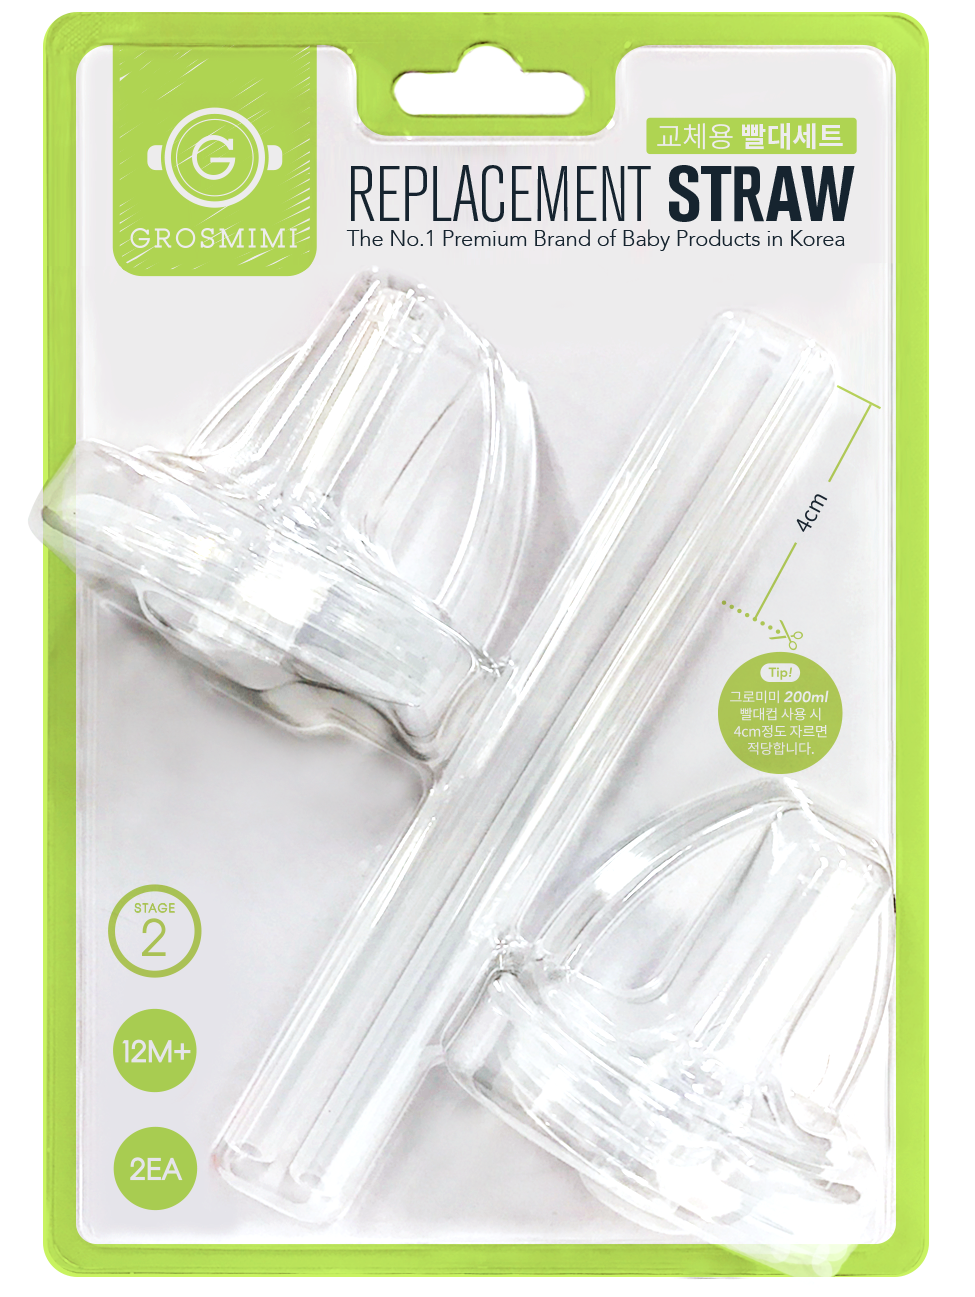 Grosmimi - Replacement Straw Kit Stage 2 (12M+) — WEVE